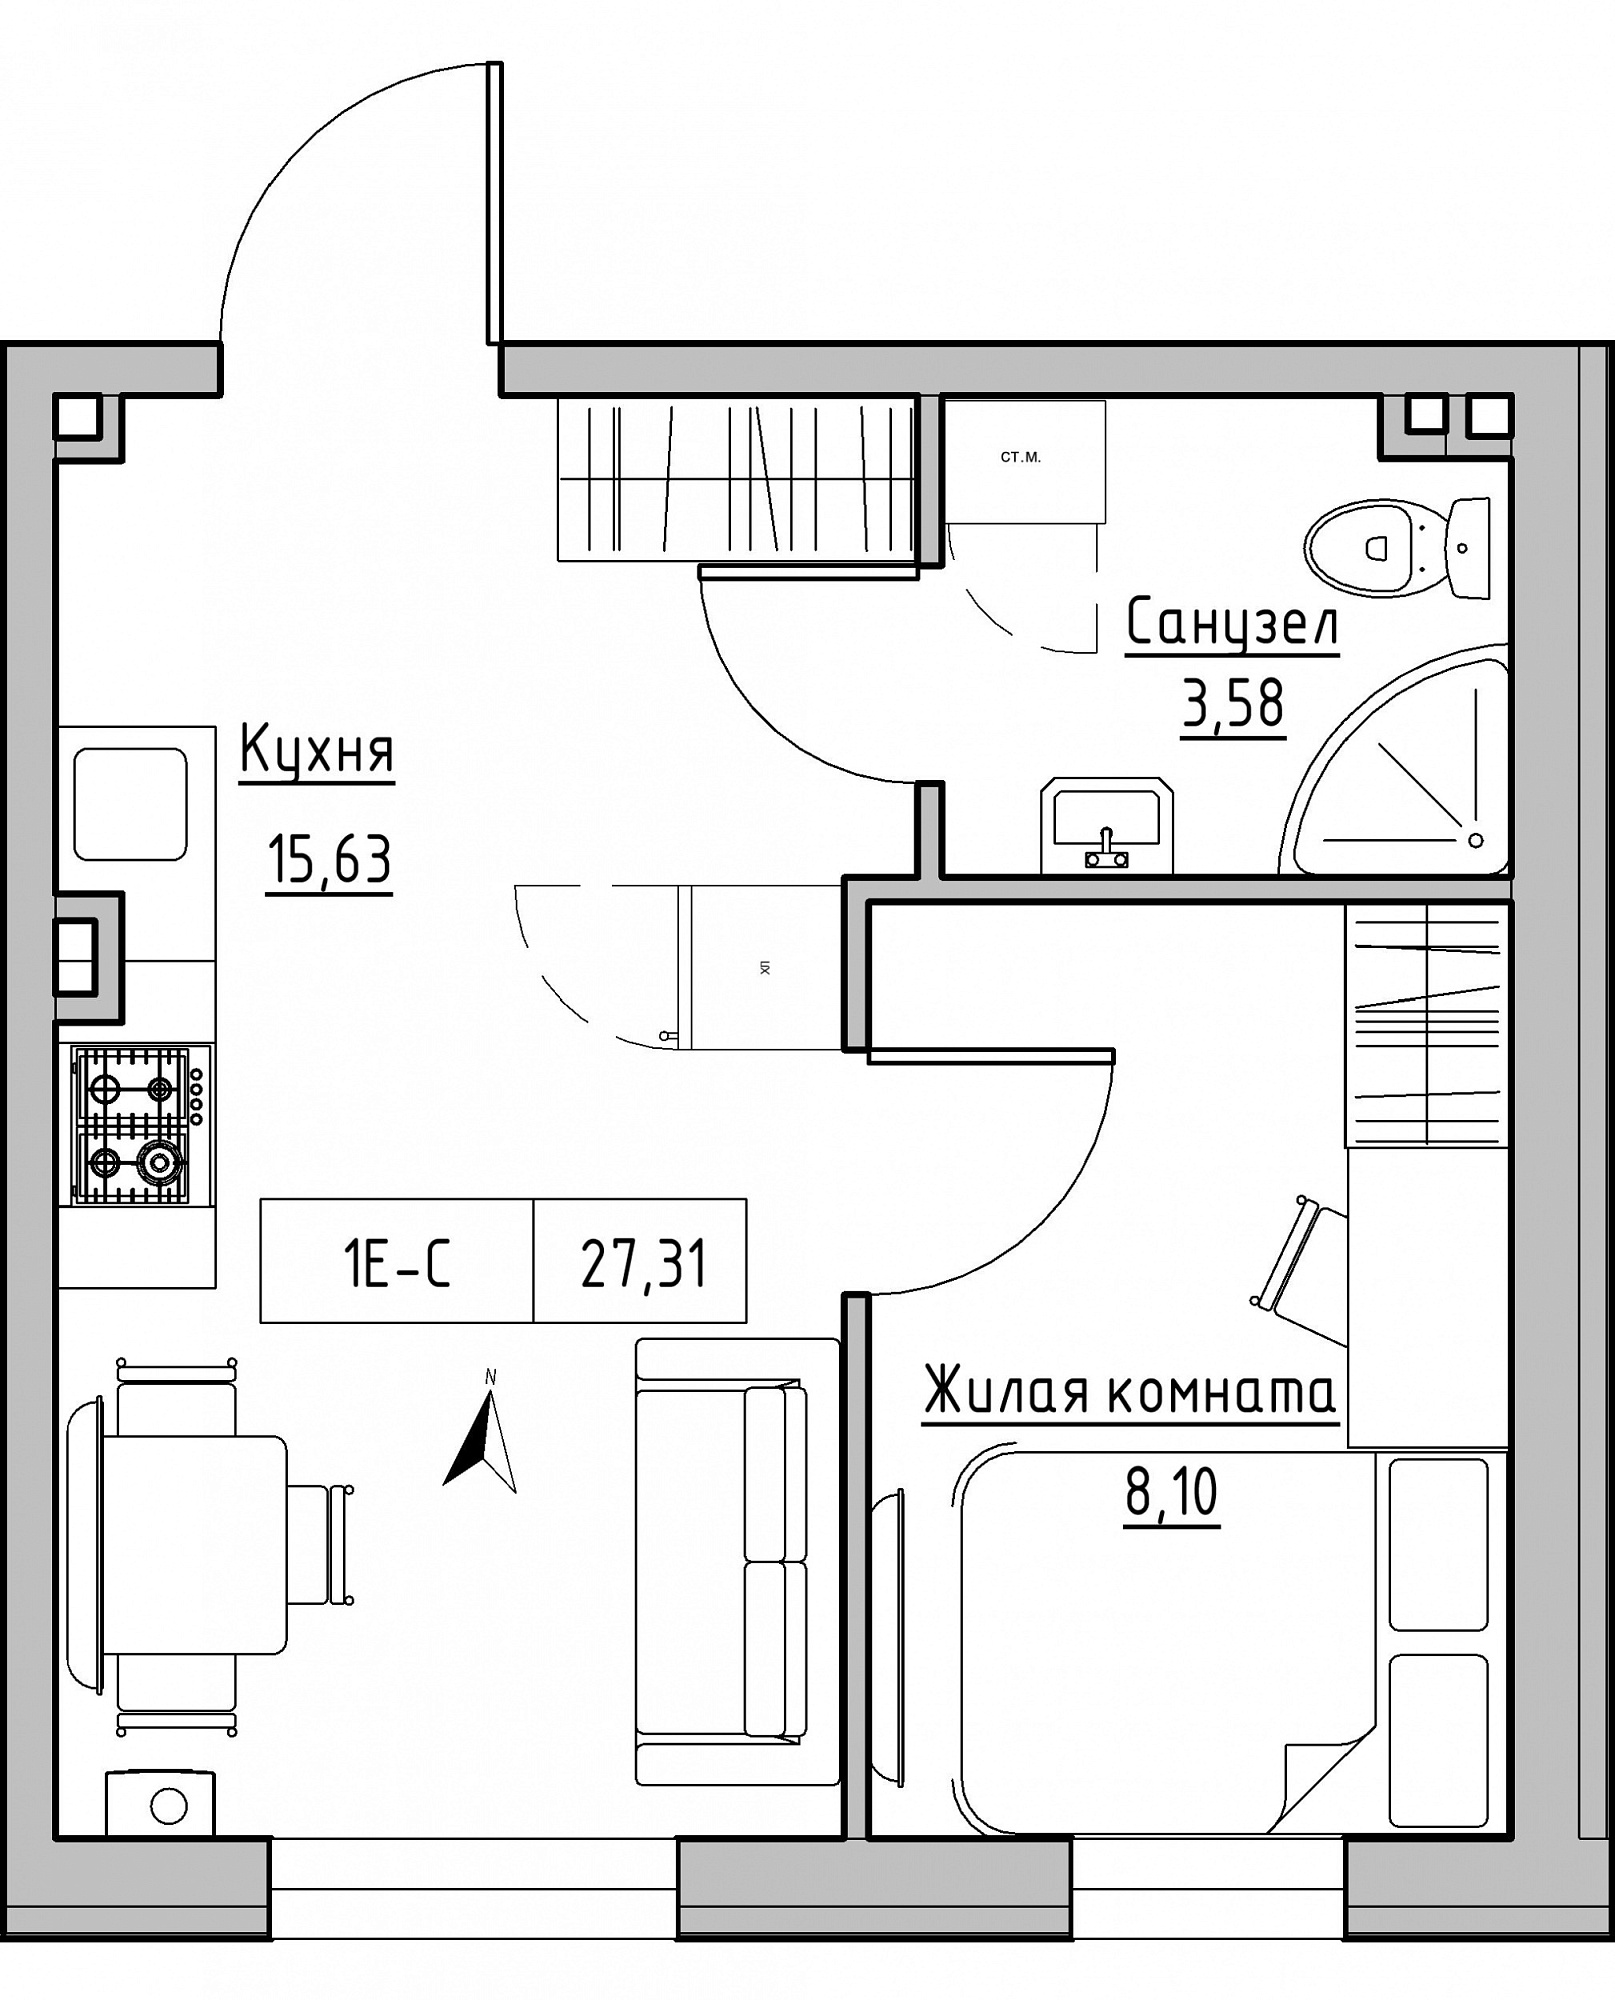 Планировка 1-к квартира площей 27.31м2, KS-024-03/0004.